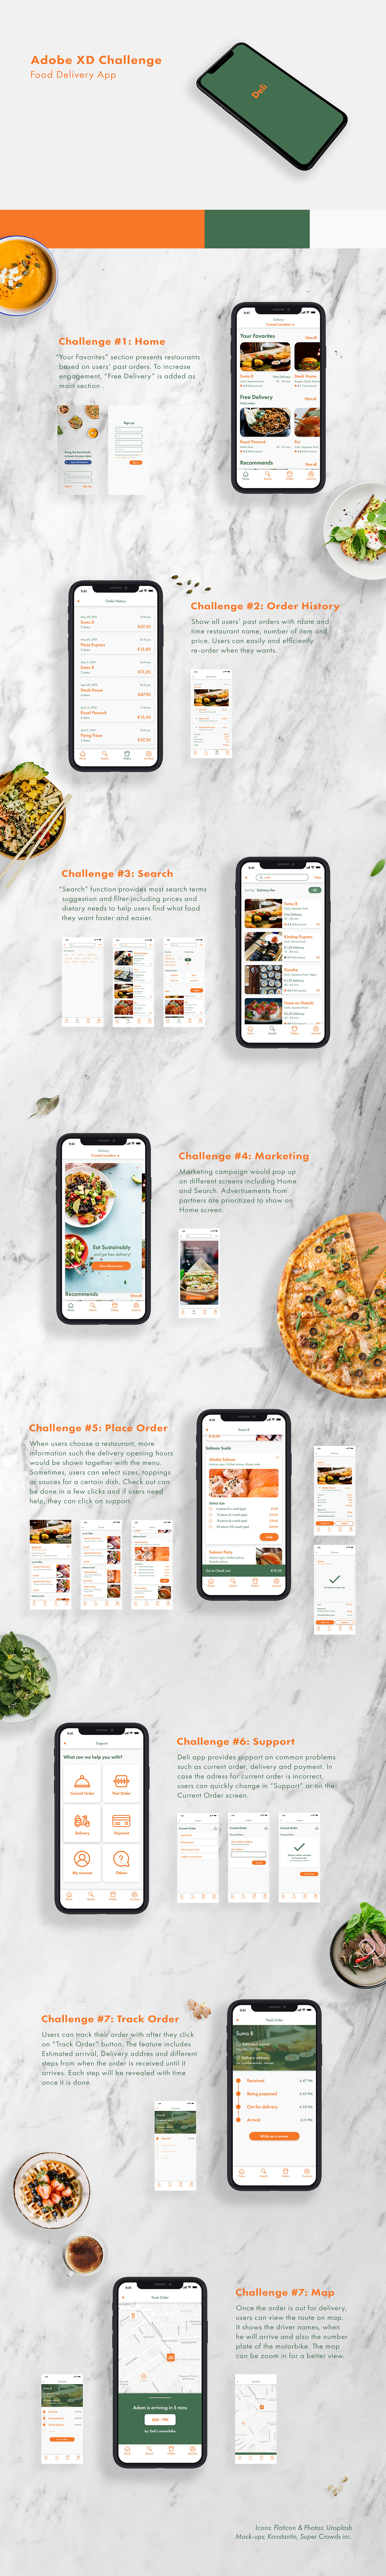 xddailychallenge UX design ui design adobexd Mobile app mobile design food delivery app